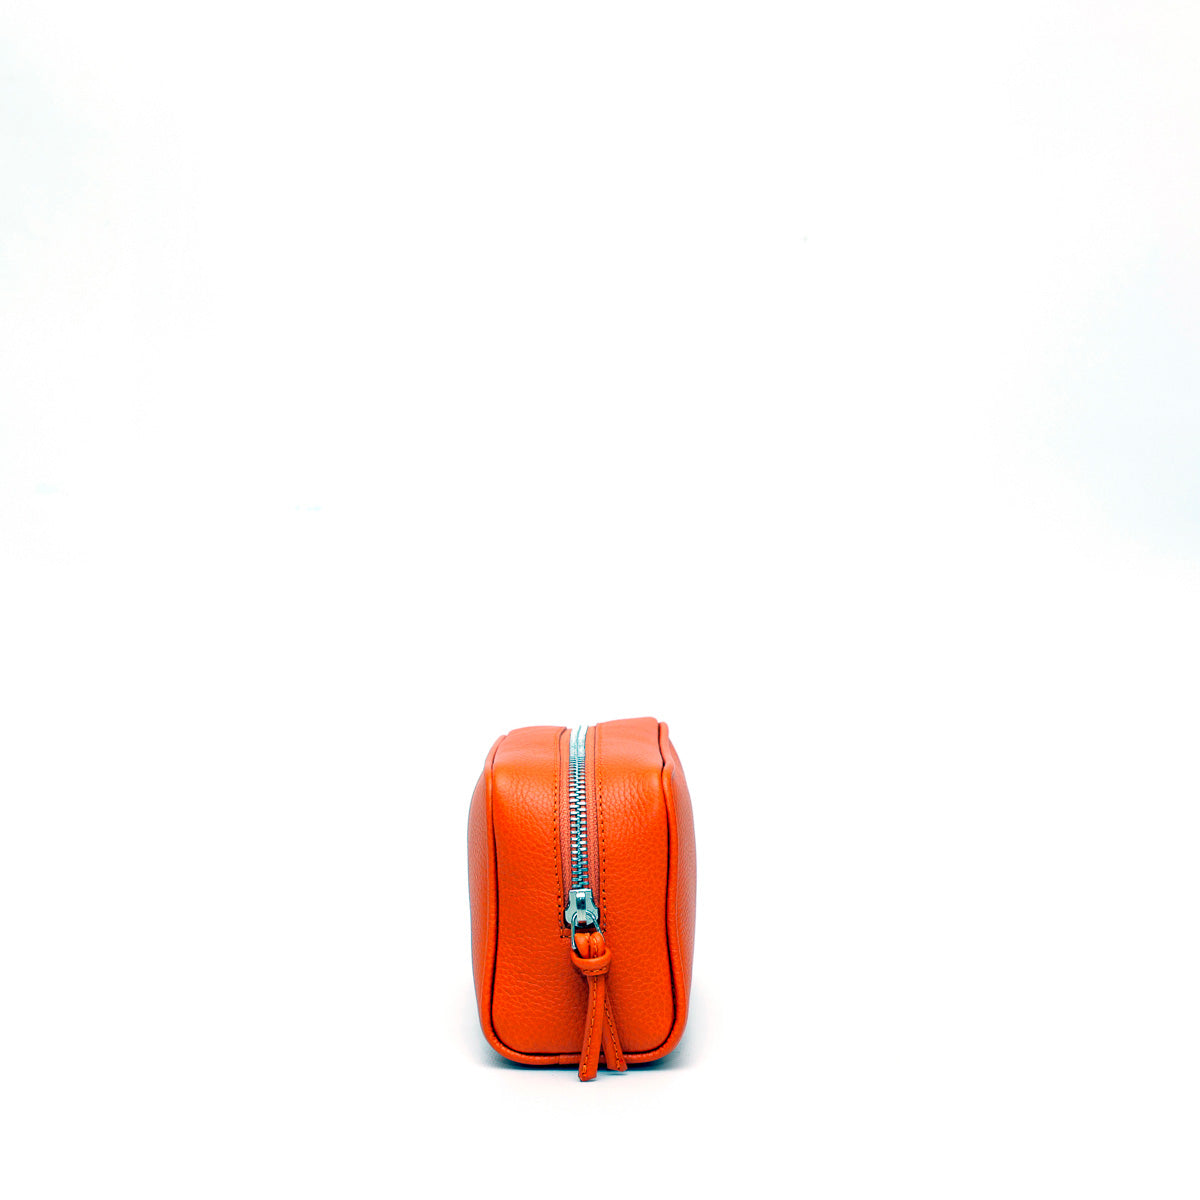 Pochette da viaggio Ball S in pelle martellata arancio prodotta in Italia da Pianigiani bags